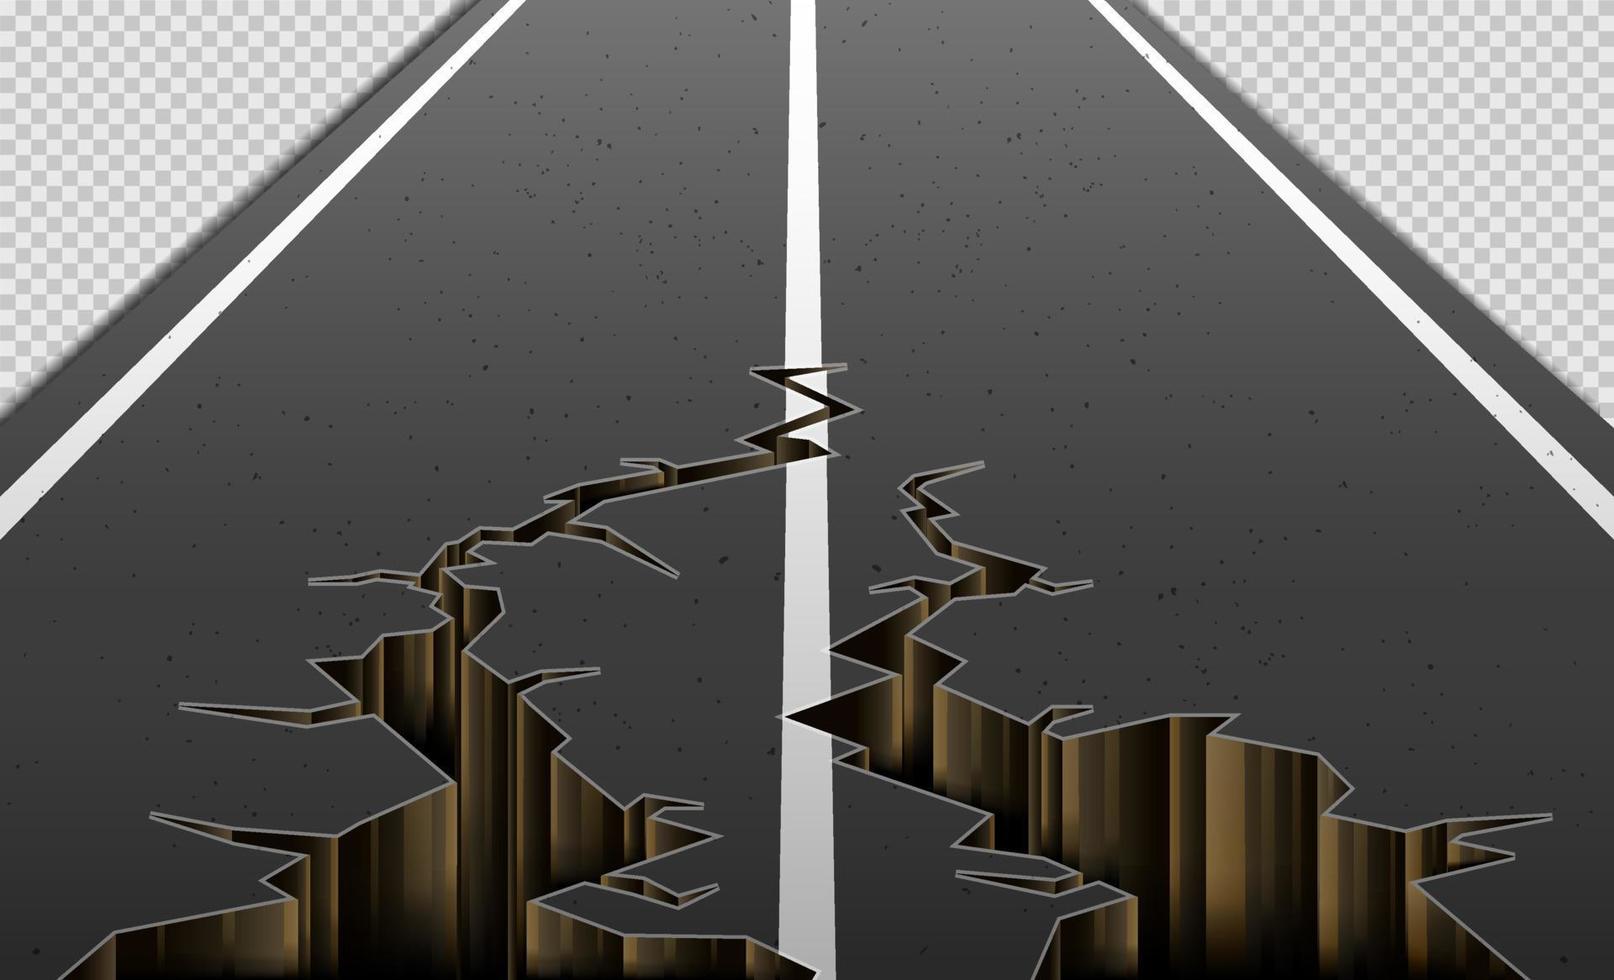 grietas en las carreteras asfaltadas causadas por los terremotos. grietas en la carretera sobre un fondo transparente. ilustración vectorial vector